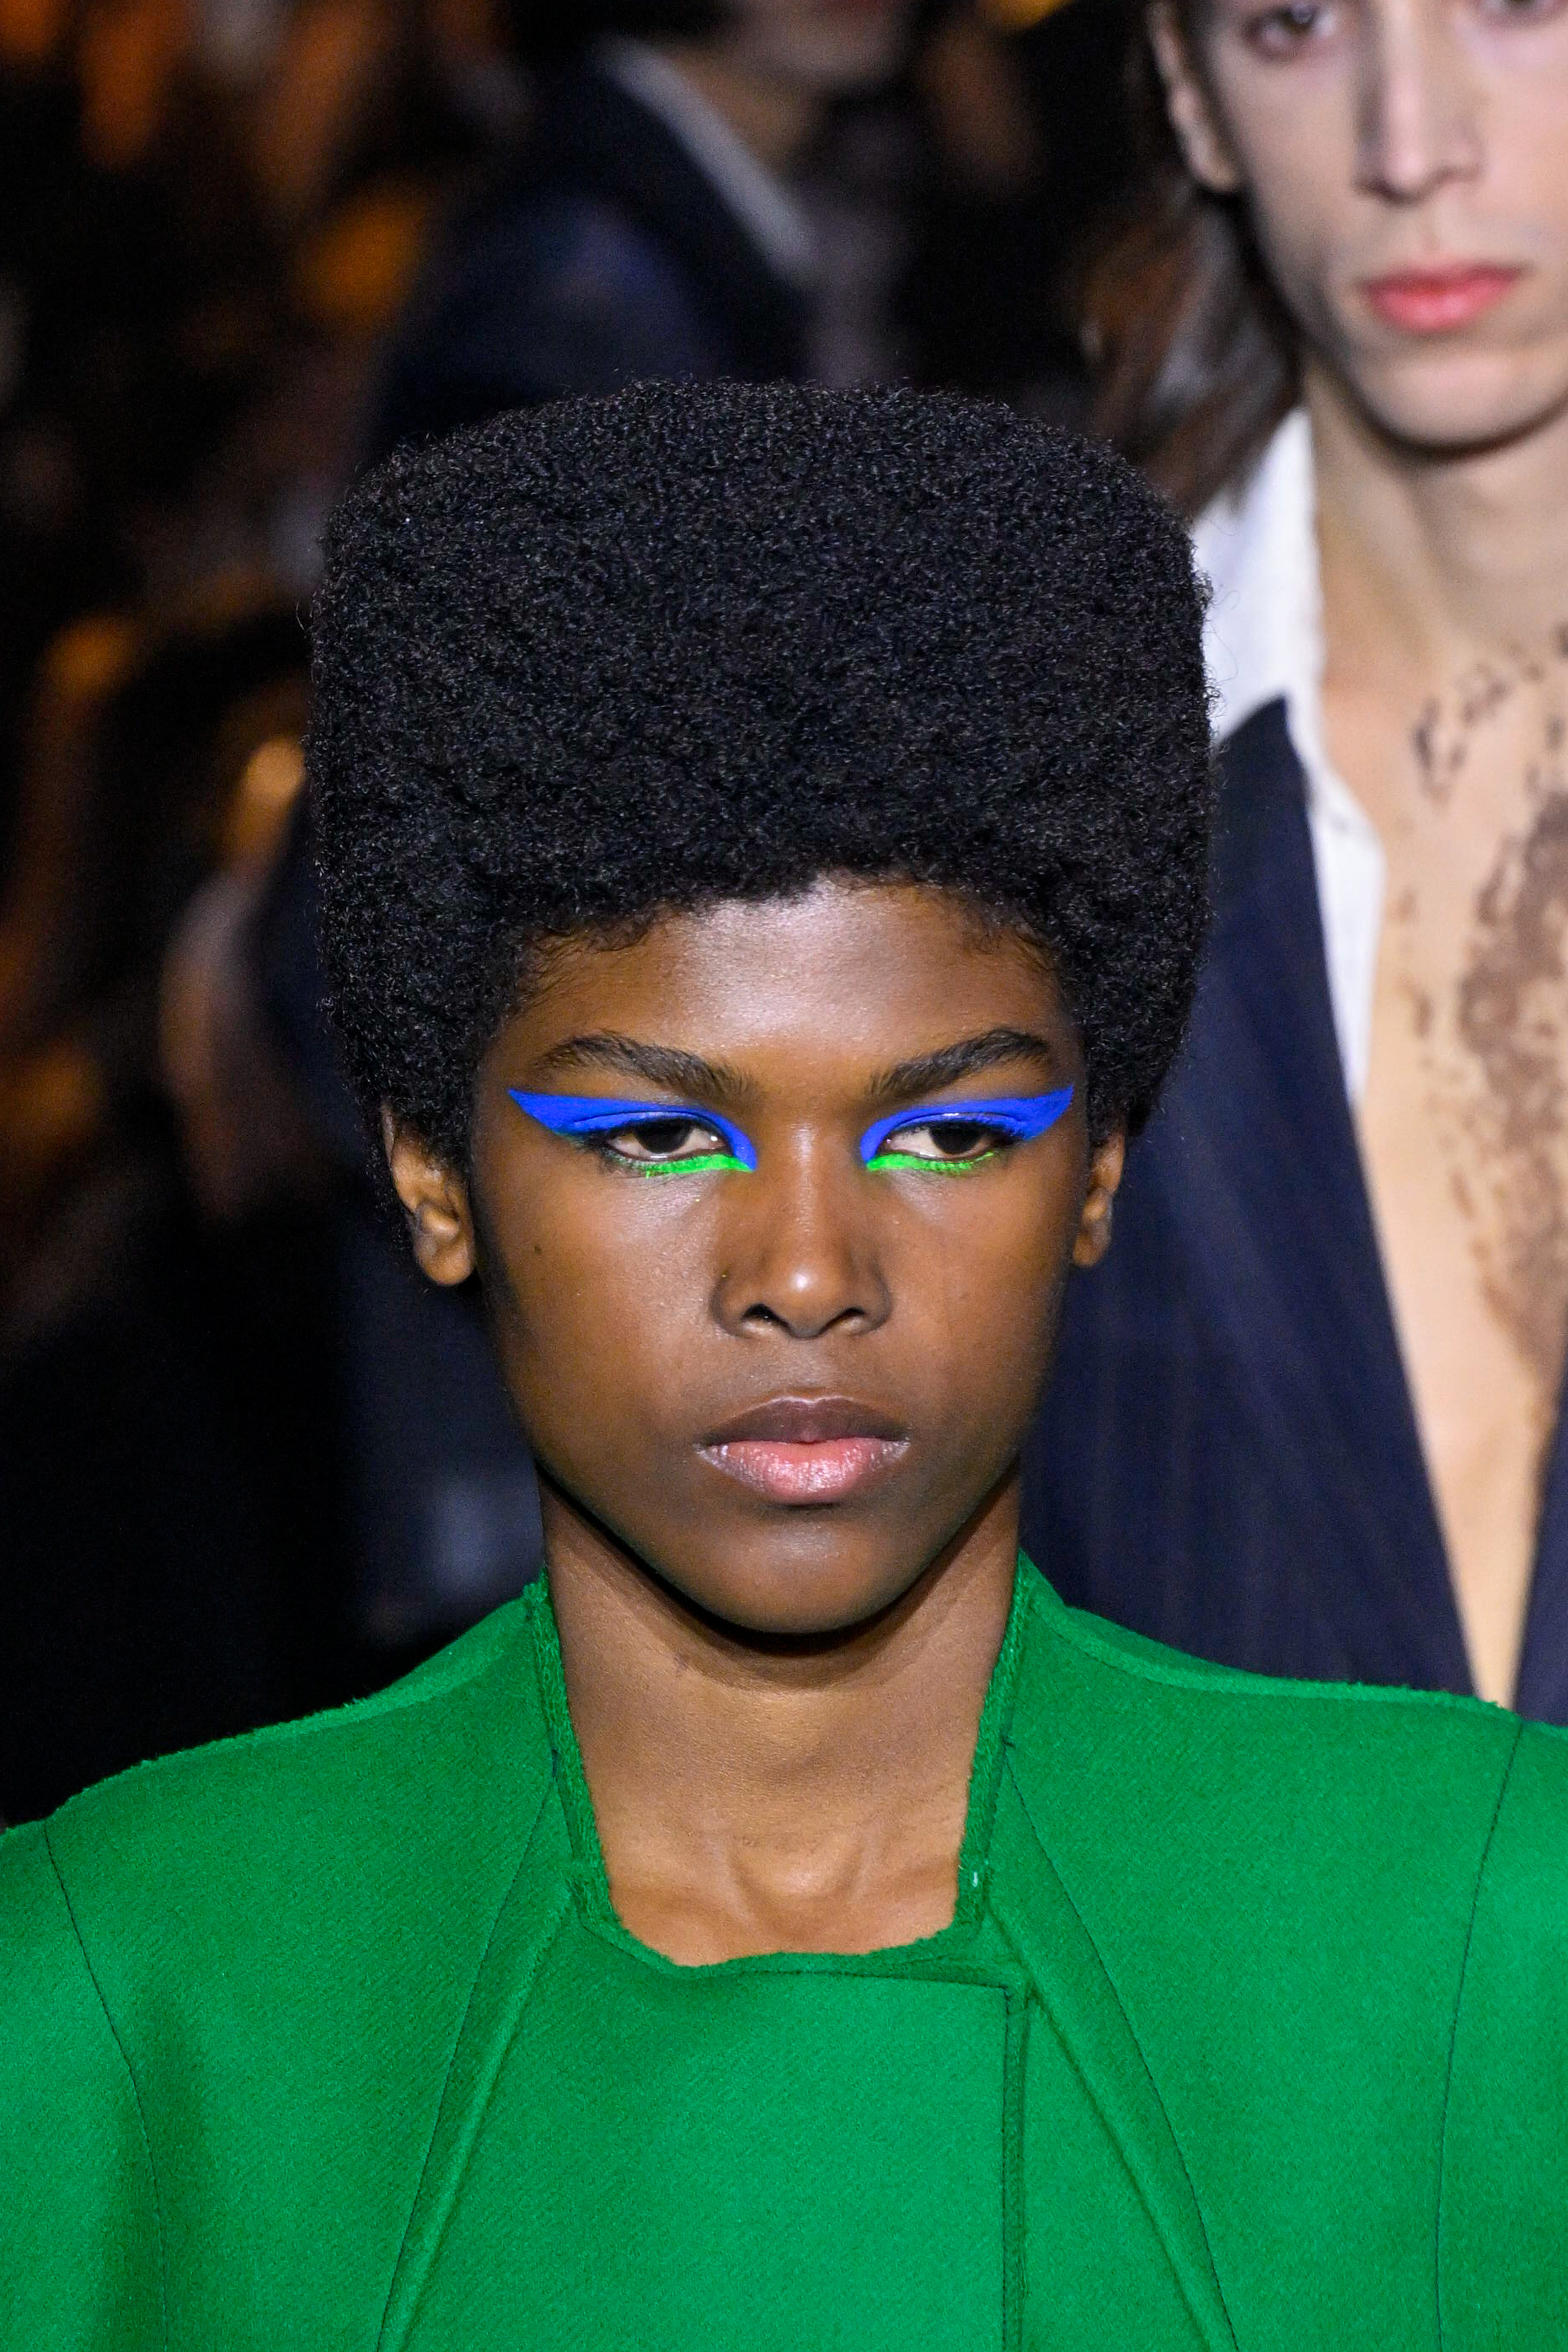 Modelo usando delineado azul e verde em desfile da Capasa Milano na semana de moda de Milão